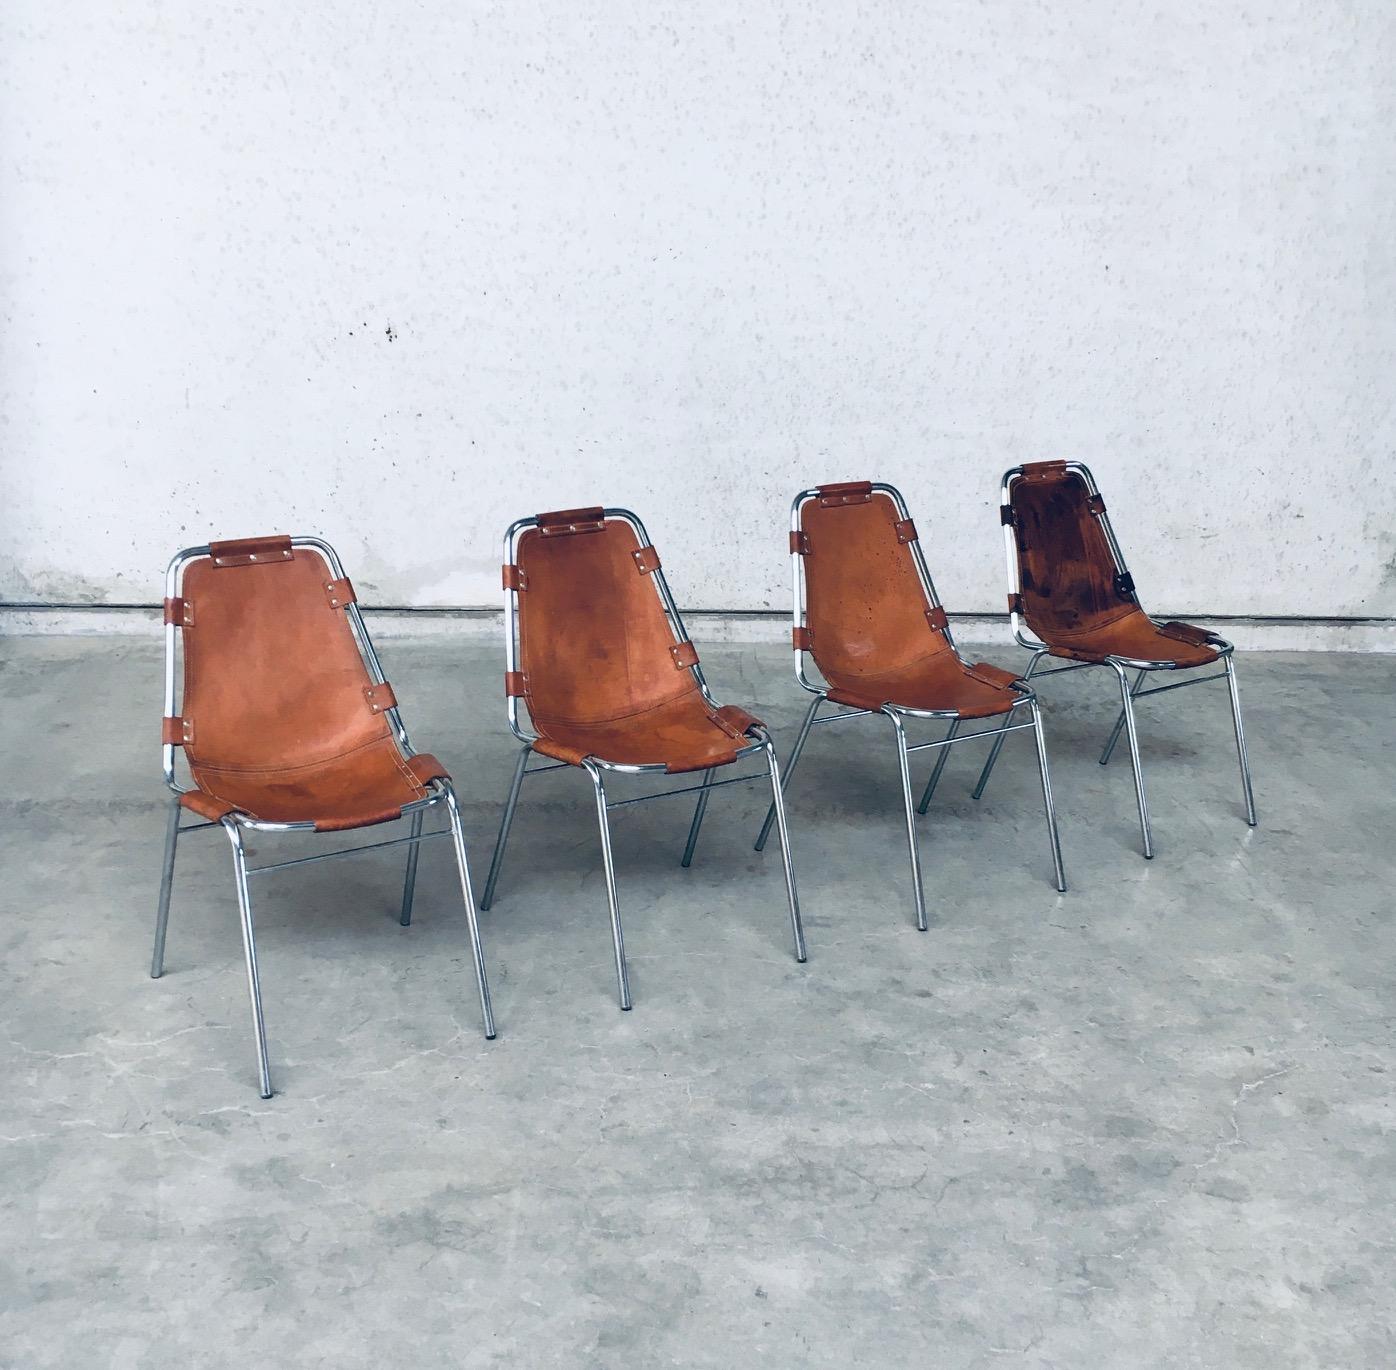 Vintage Midcentury Modern Italian Design Dining Chair 4er Set von Dal Vera ausgewählt von Charlotte Perriand für 'Les Arcs'. Hergestellt in Italien von Dal Vera, Ende der 1960er/Anfang der 1970er Jahre. Die 